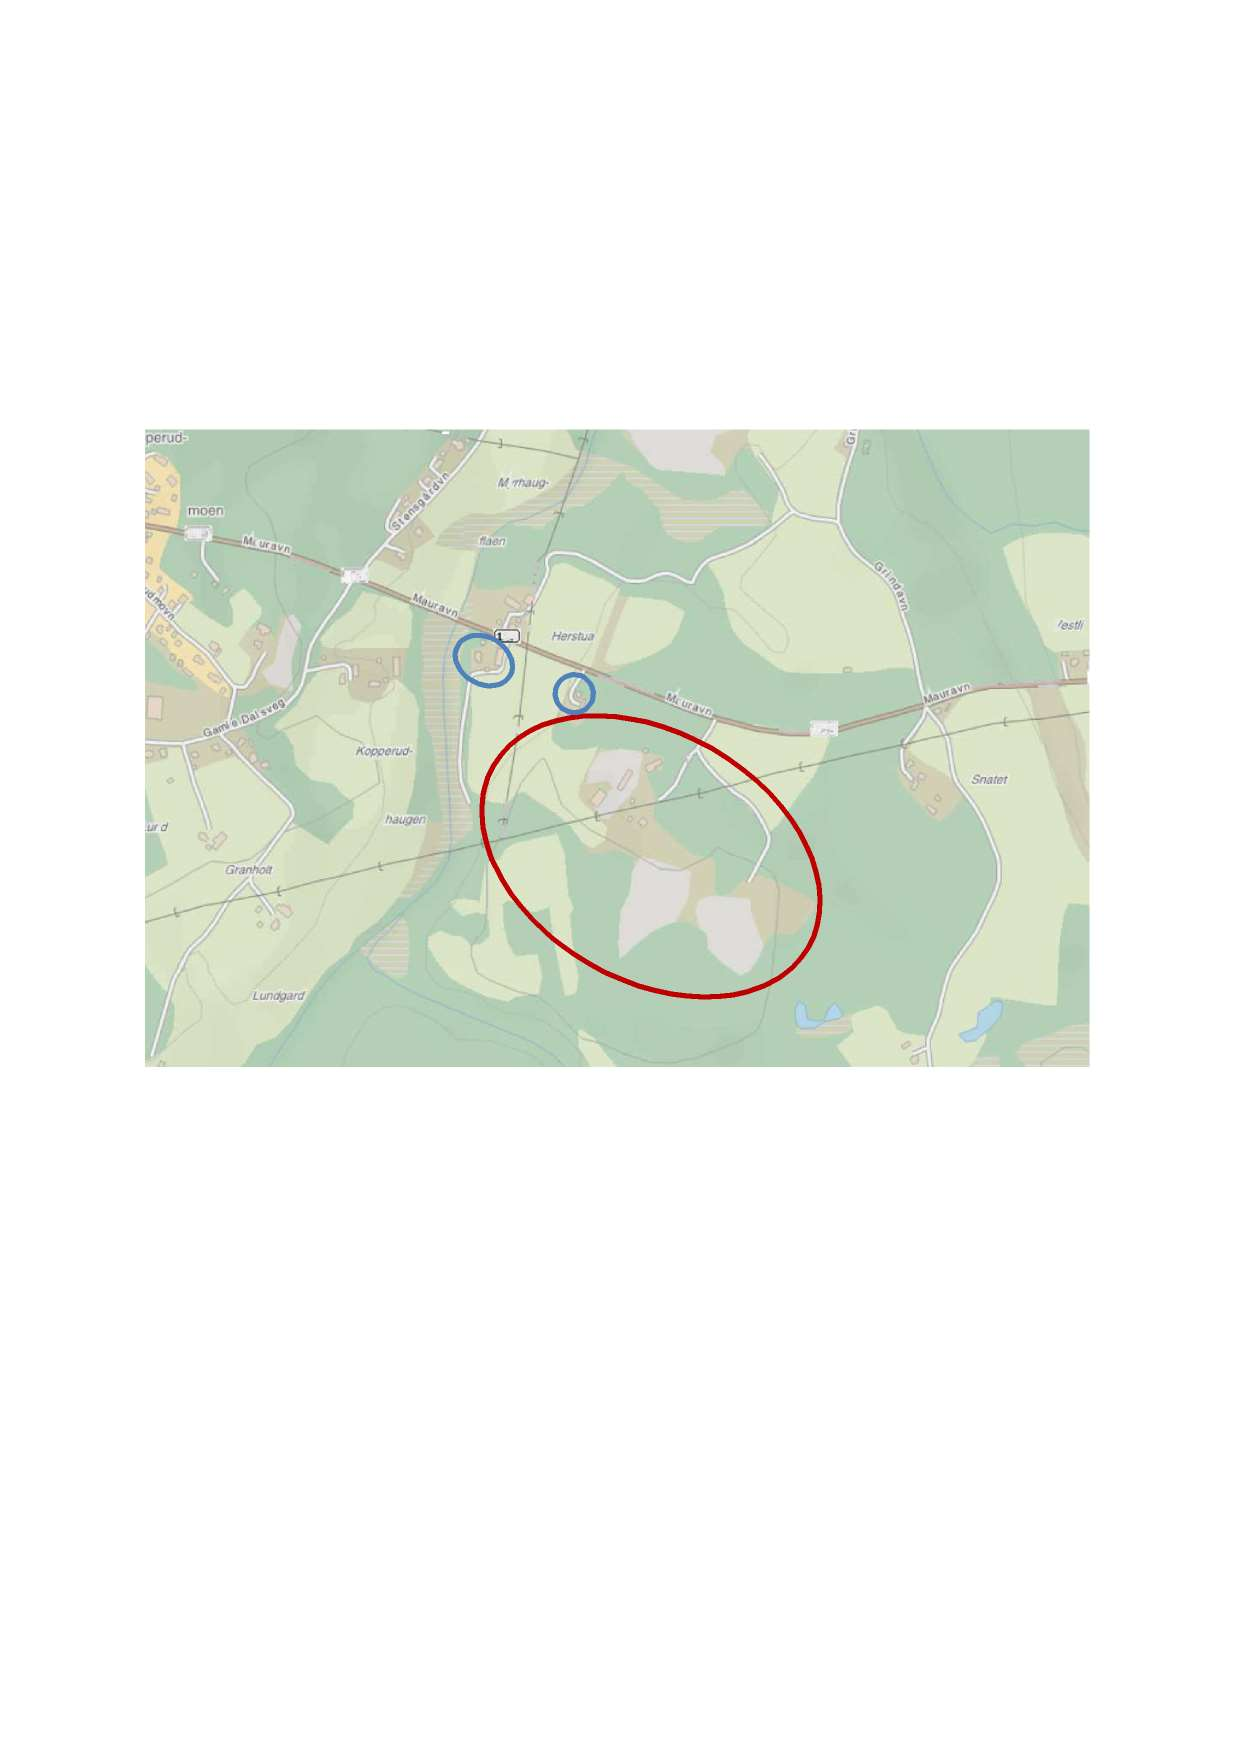 Bakgru Swec Nrge AS har på ppdg f AS utført beregig av støy f Herstua Grus i Naestad kmmue. Pukkverket er markert i kartet uder. Nærmeste bliger er eeblig g gårdsbruk rd-rdvest fr pukkverket.